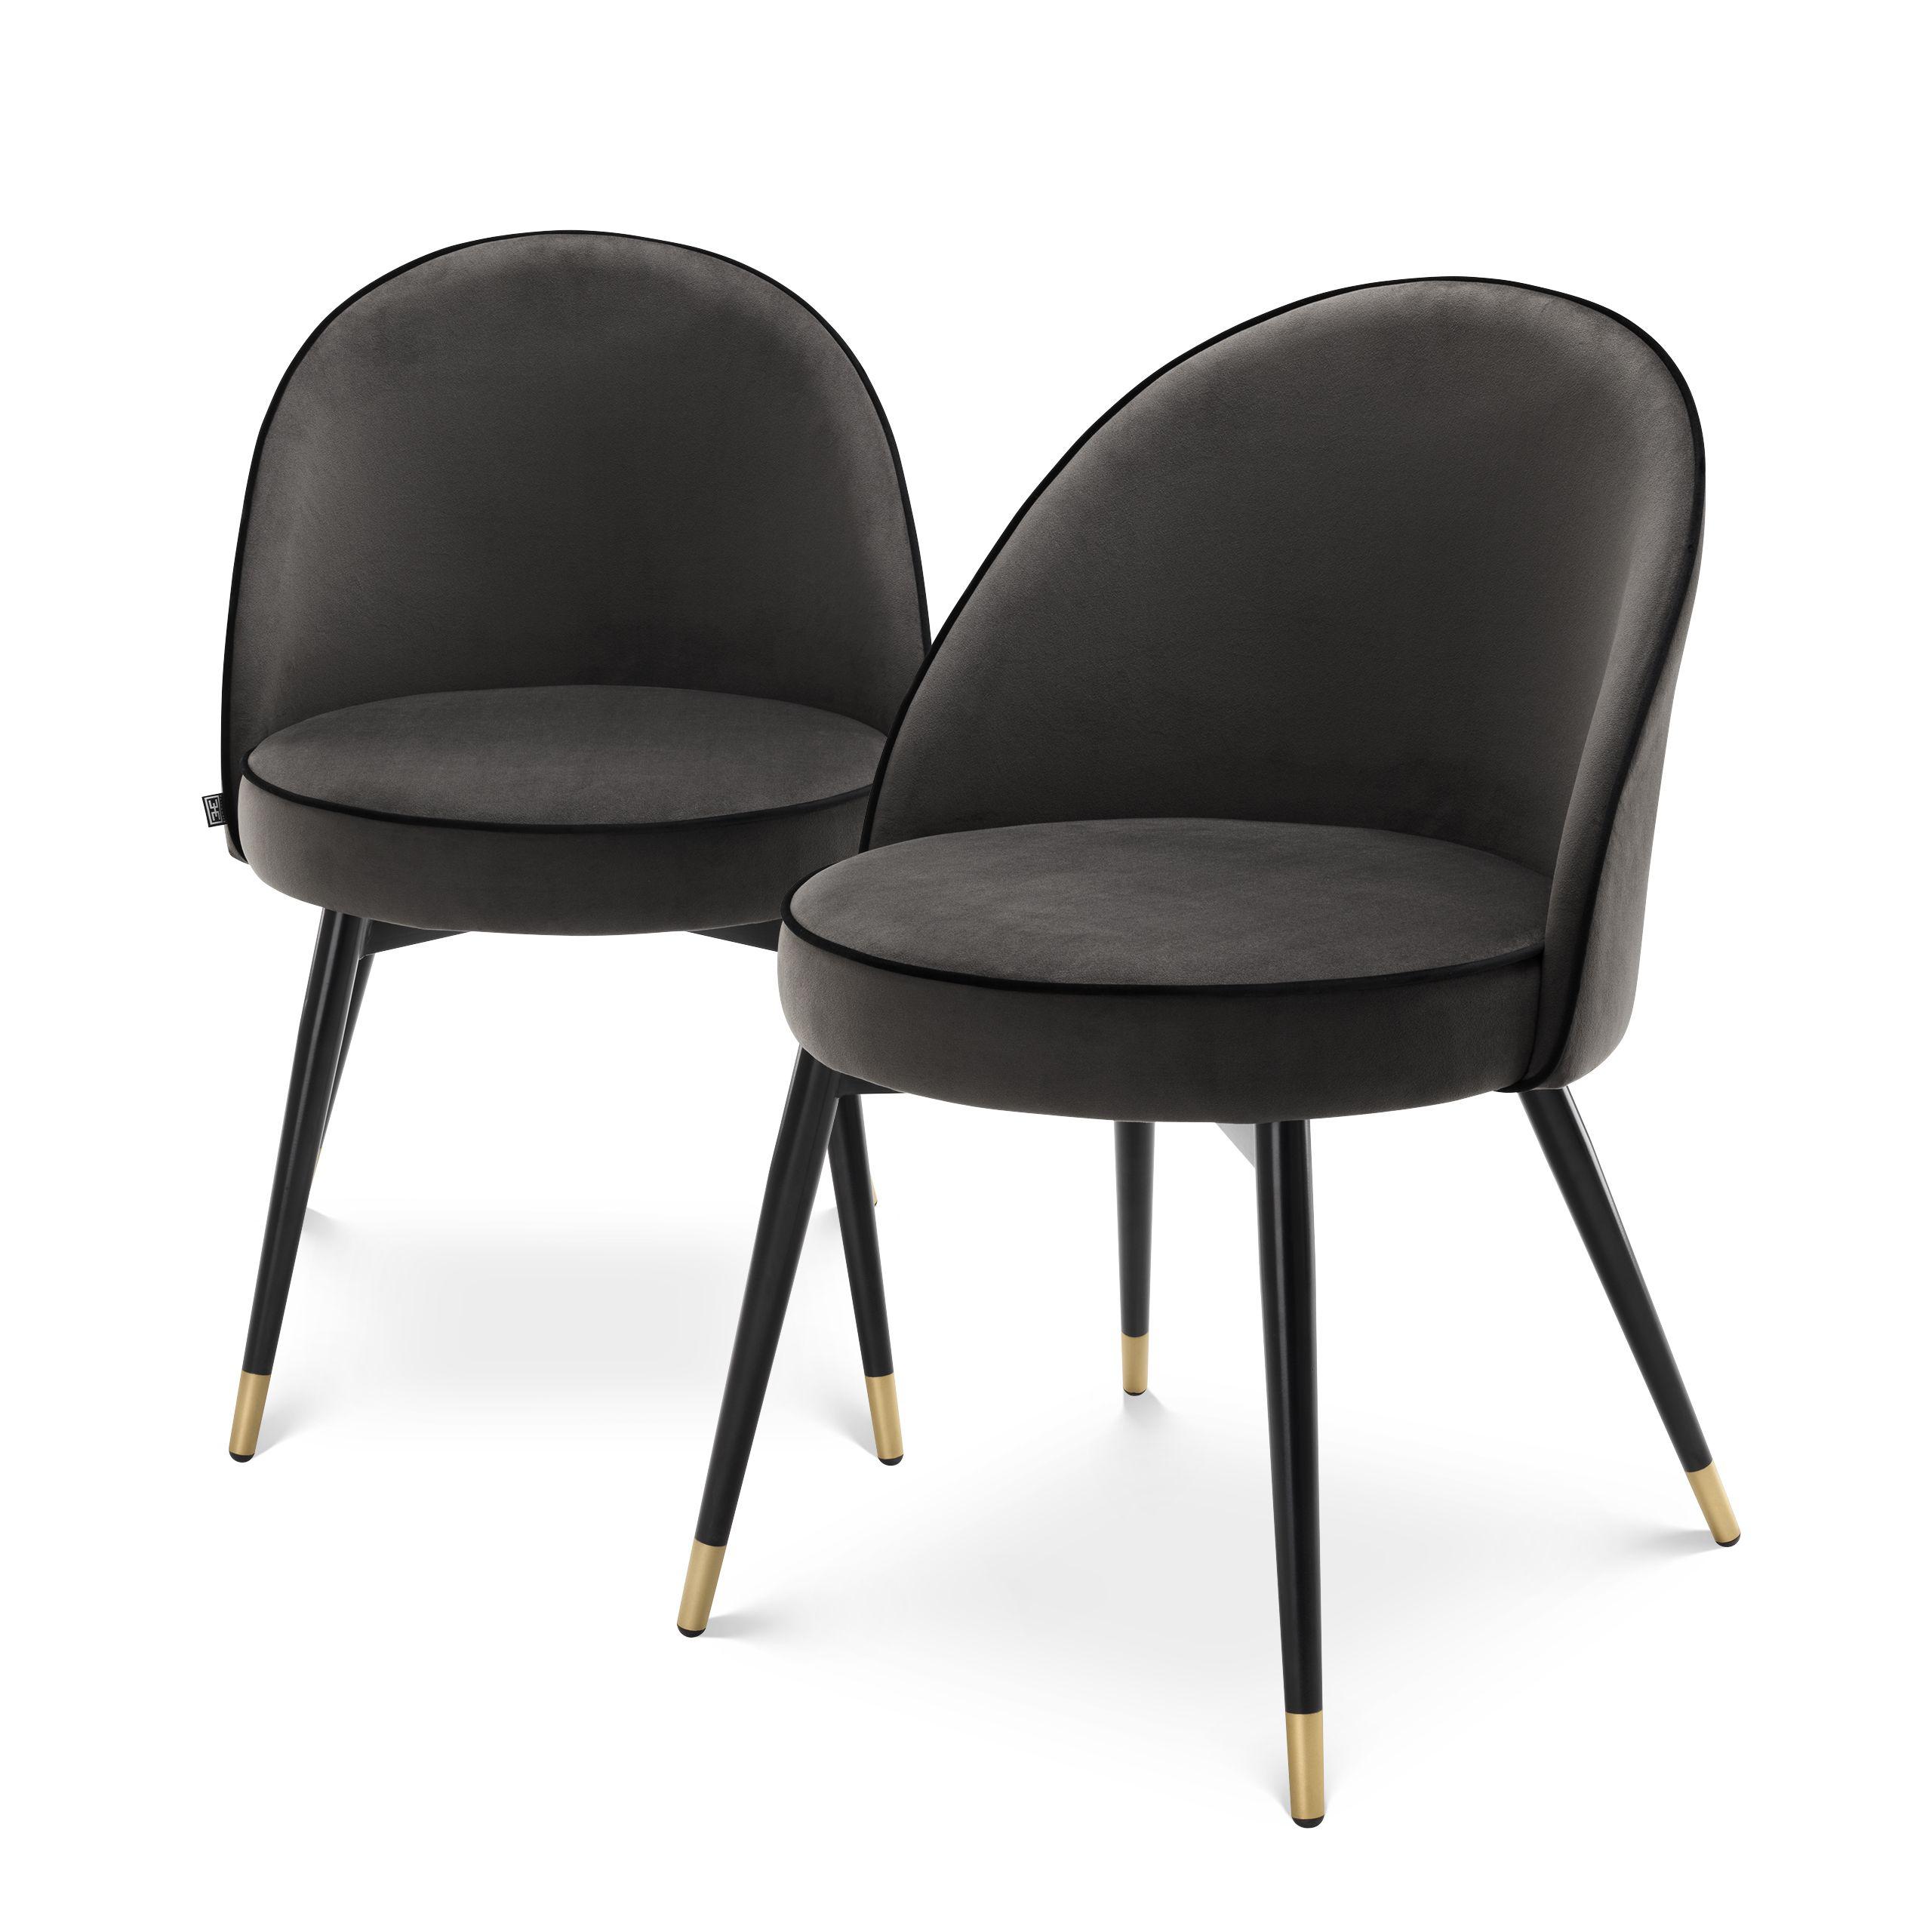 Купить Стул без подлокотника Dining Chair Cooper set of 2 в интернет-магазине roooms.ru